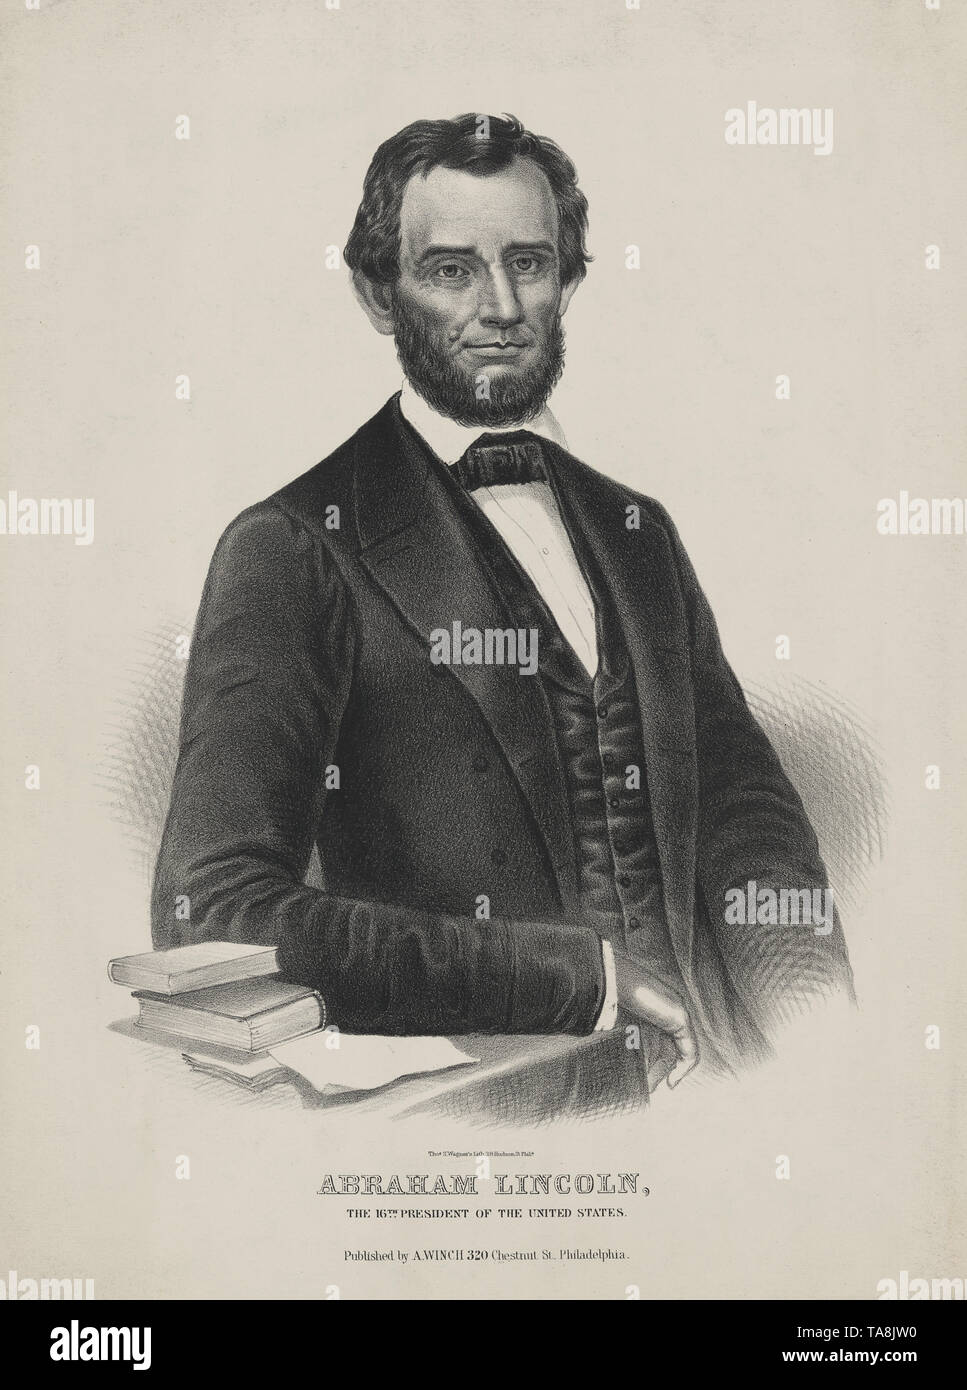 Abraham Lincoln, der 16. Präsident der Vereinigten Staaten, Lithographie von Thomas S. Wagner, durch A. Winde, Philadelphia, 1860 veröffentlicht. Stockfoto